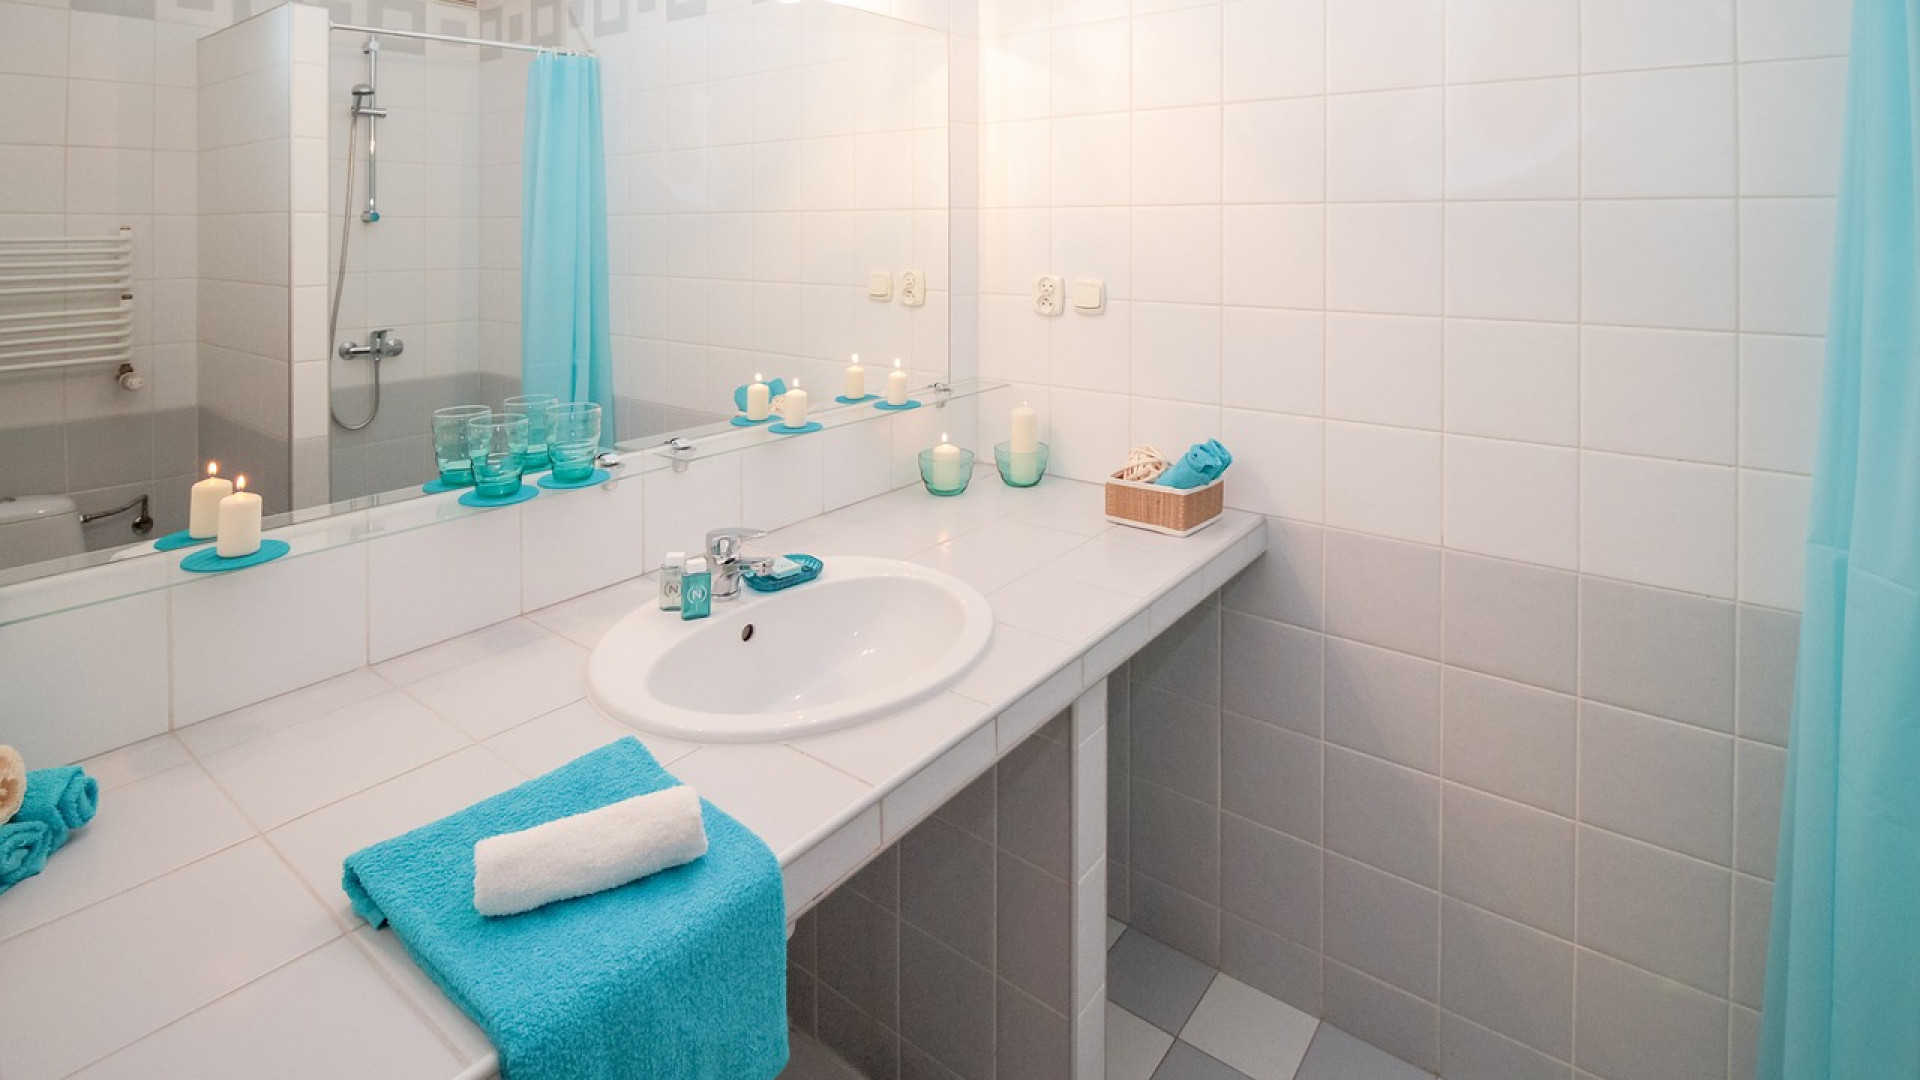 Les avantages des produits naturels d’entretien pour salle de bain